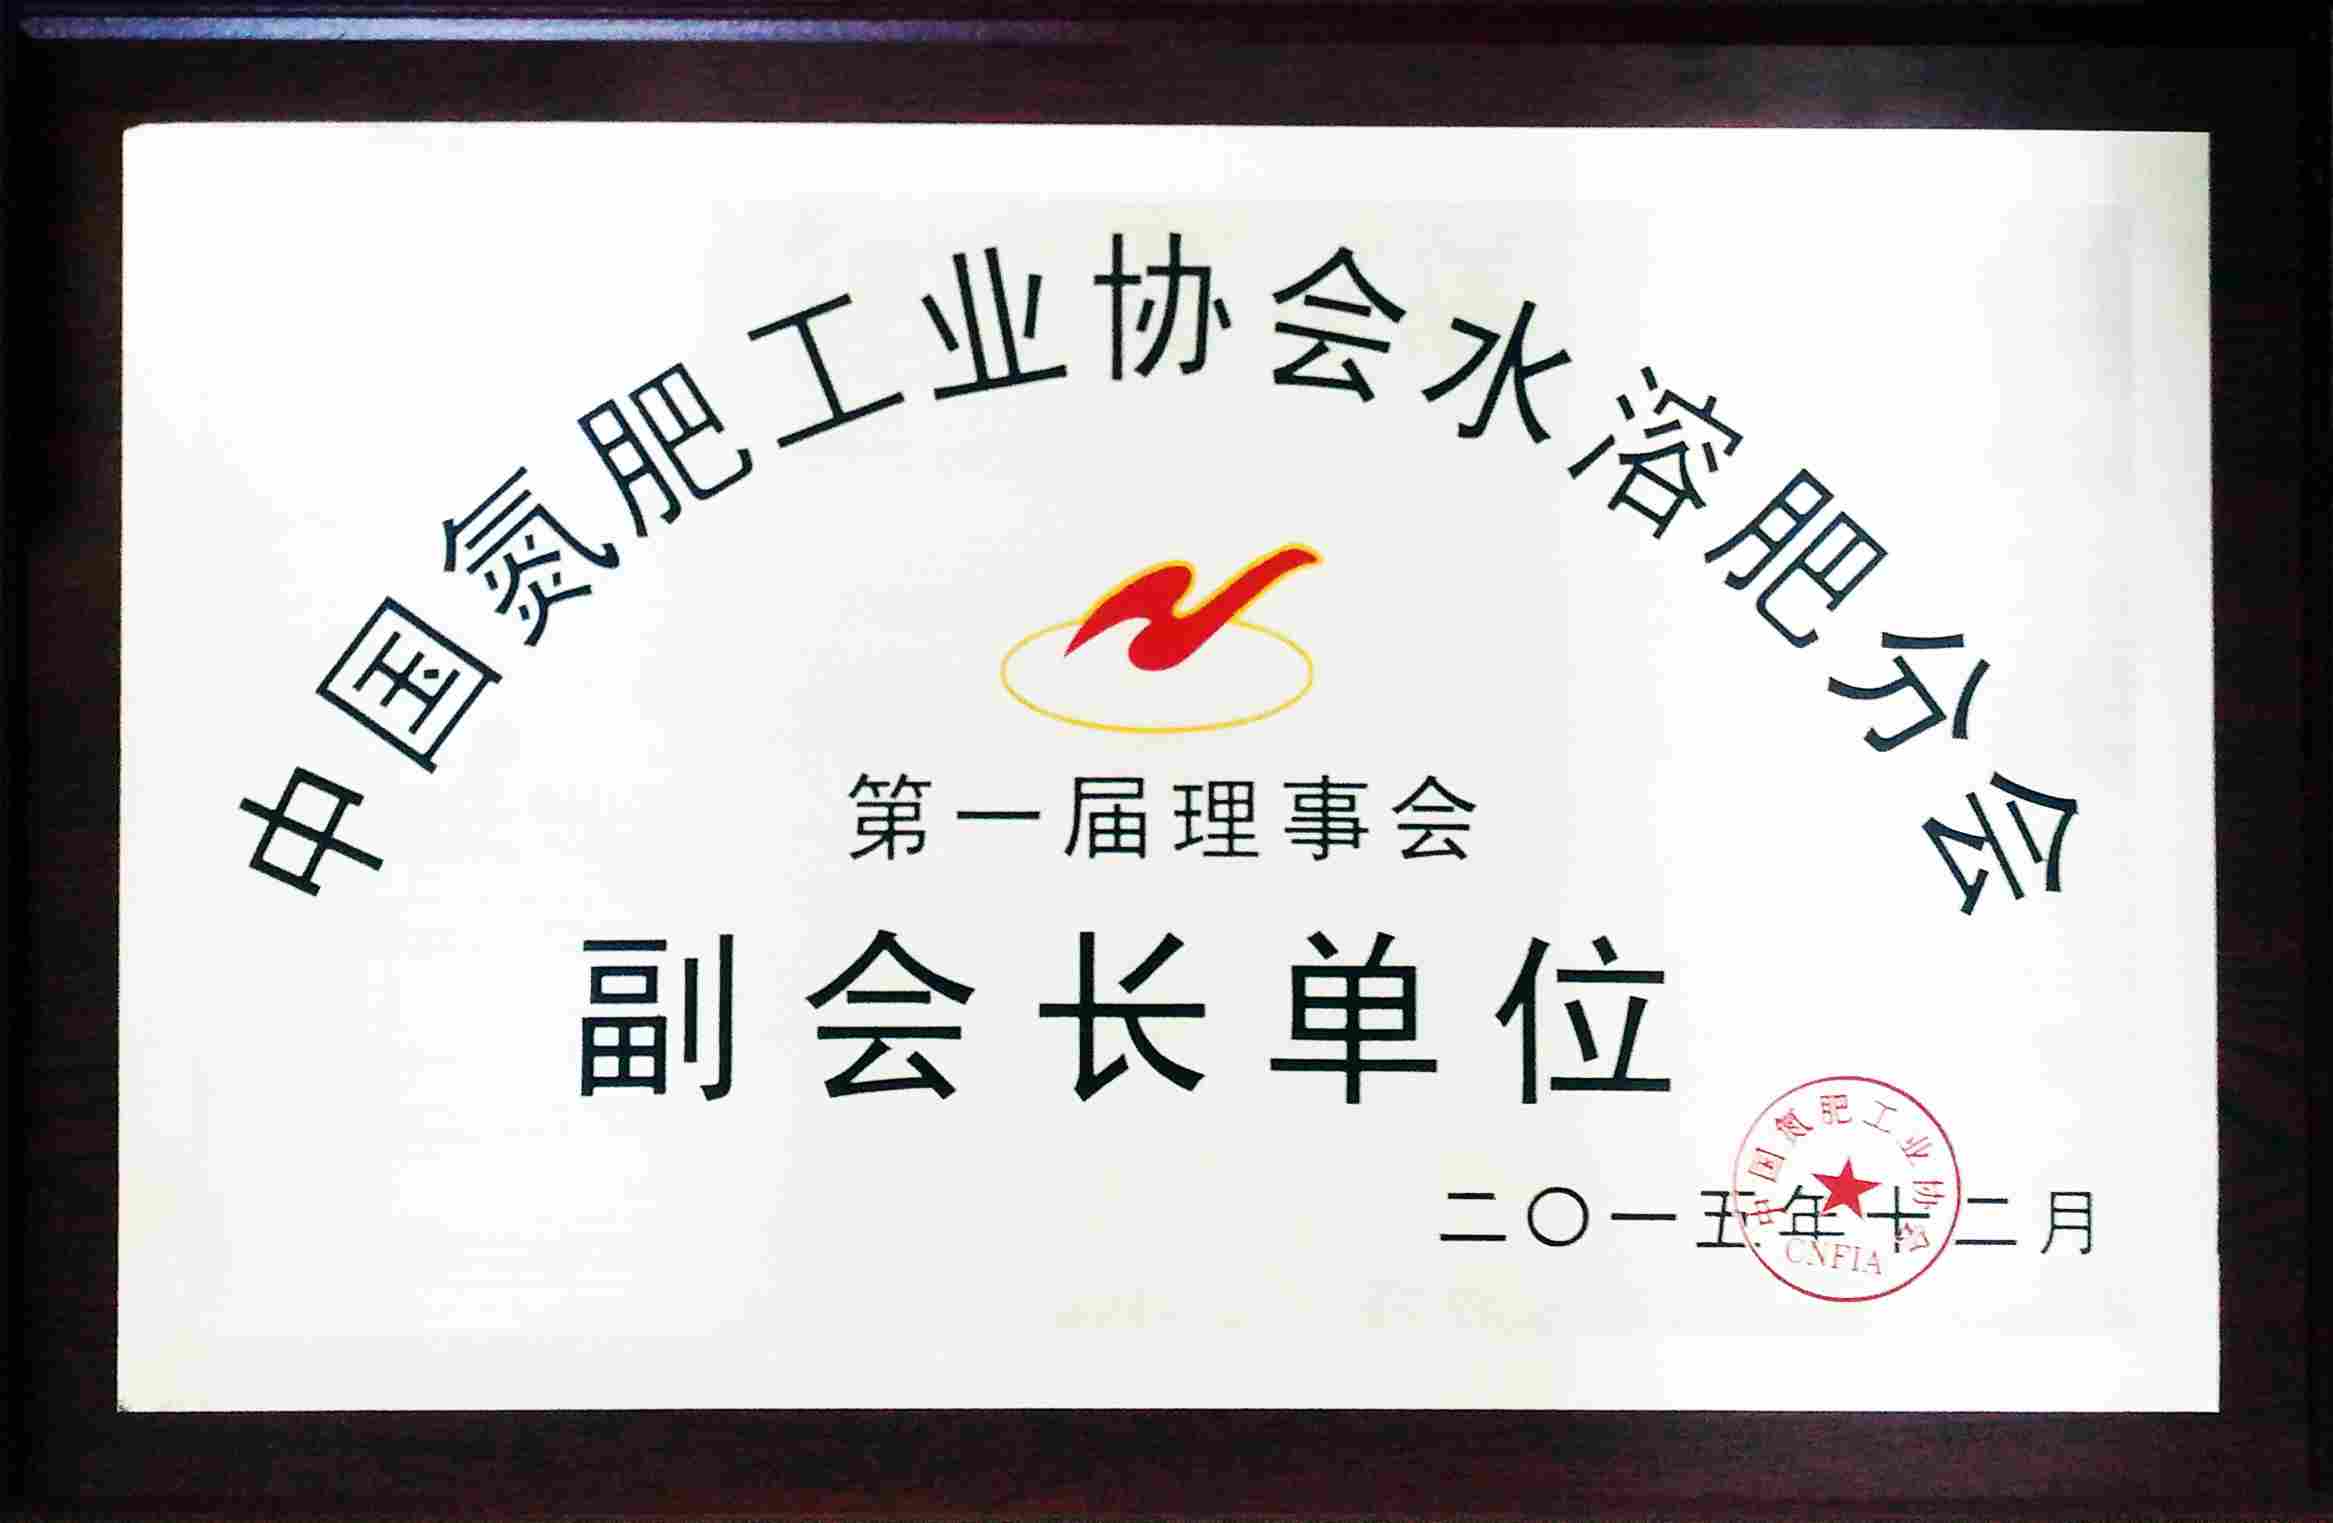 2015年12月中国氮肥工业协会水溶肥分会副会长单位